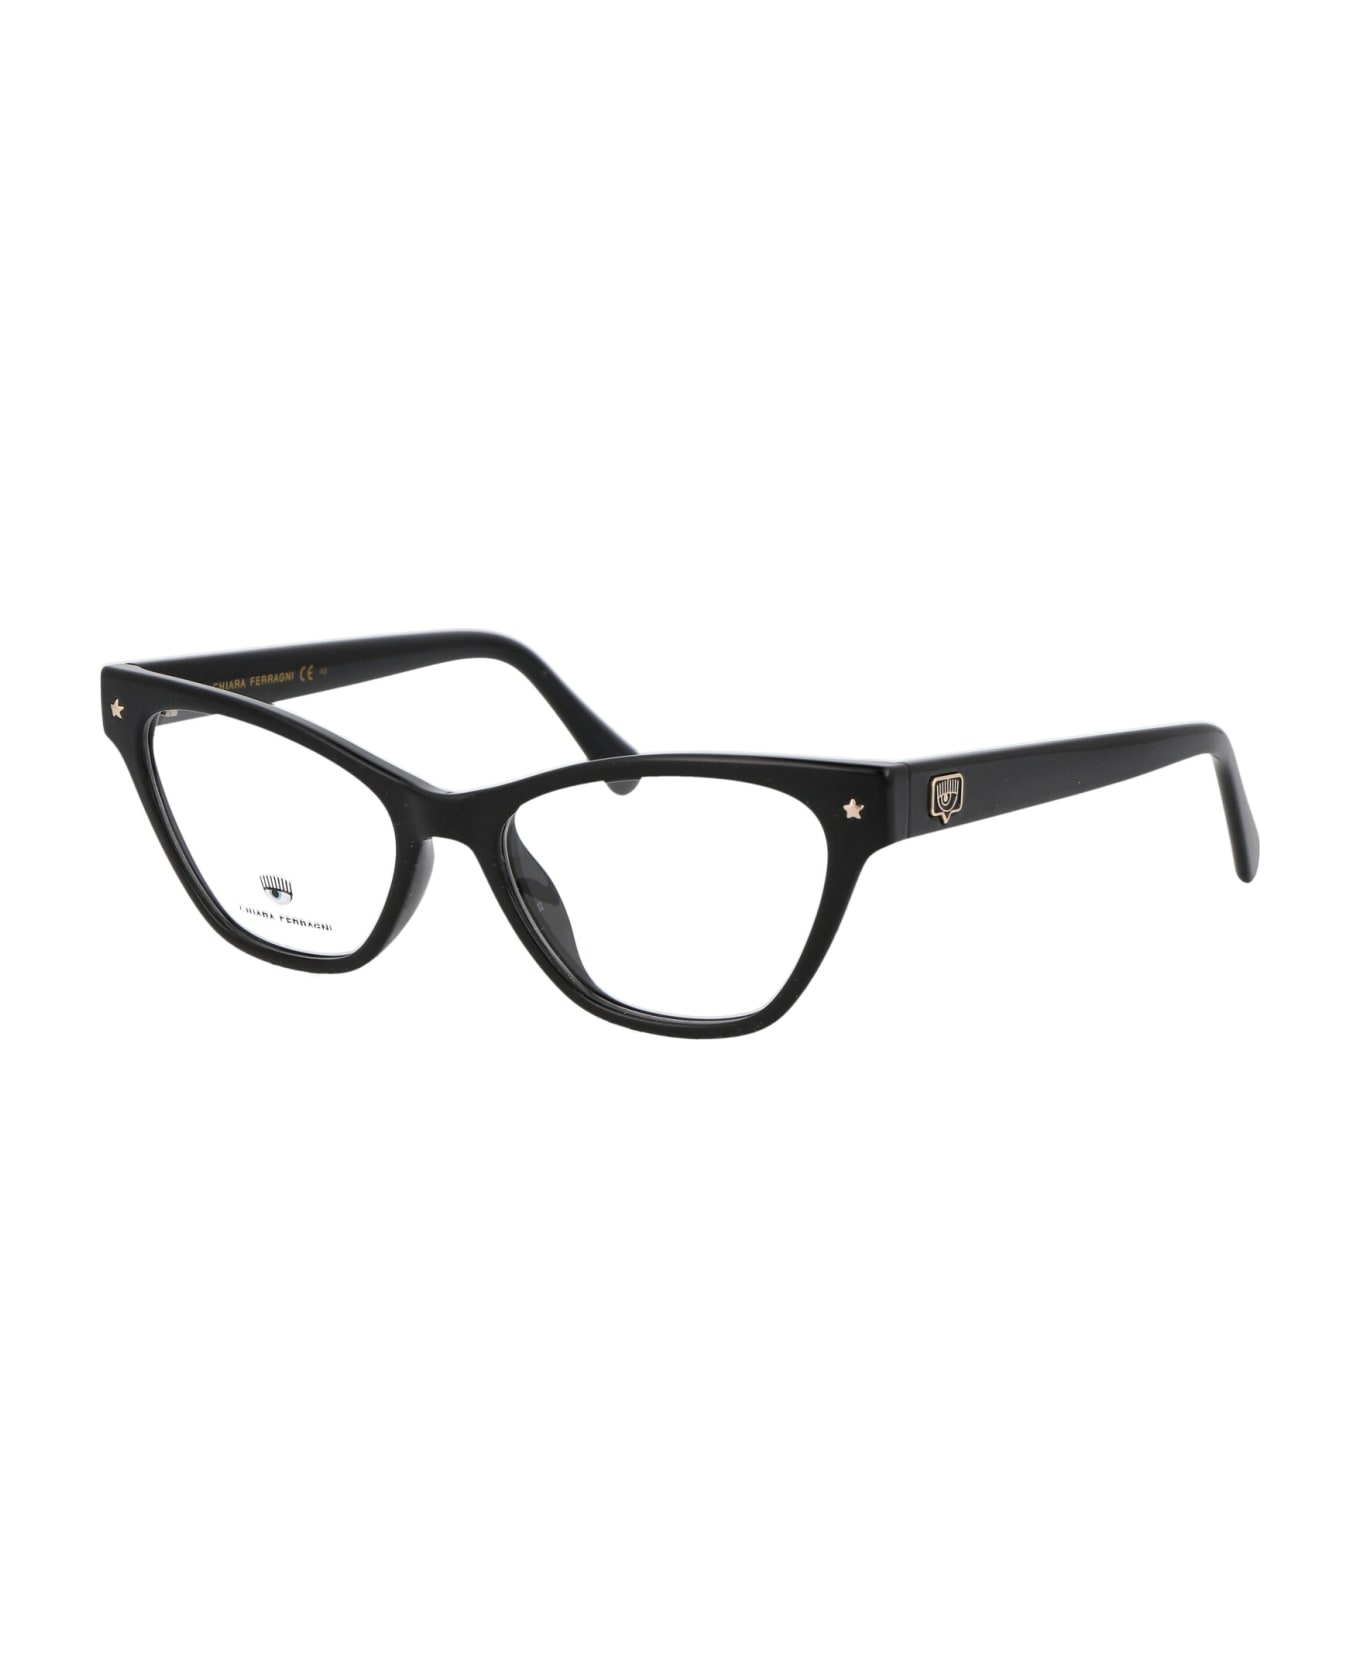 Chiara Ferragni Cf 7019 Glasses - 808 BLACK